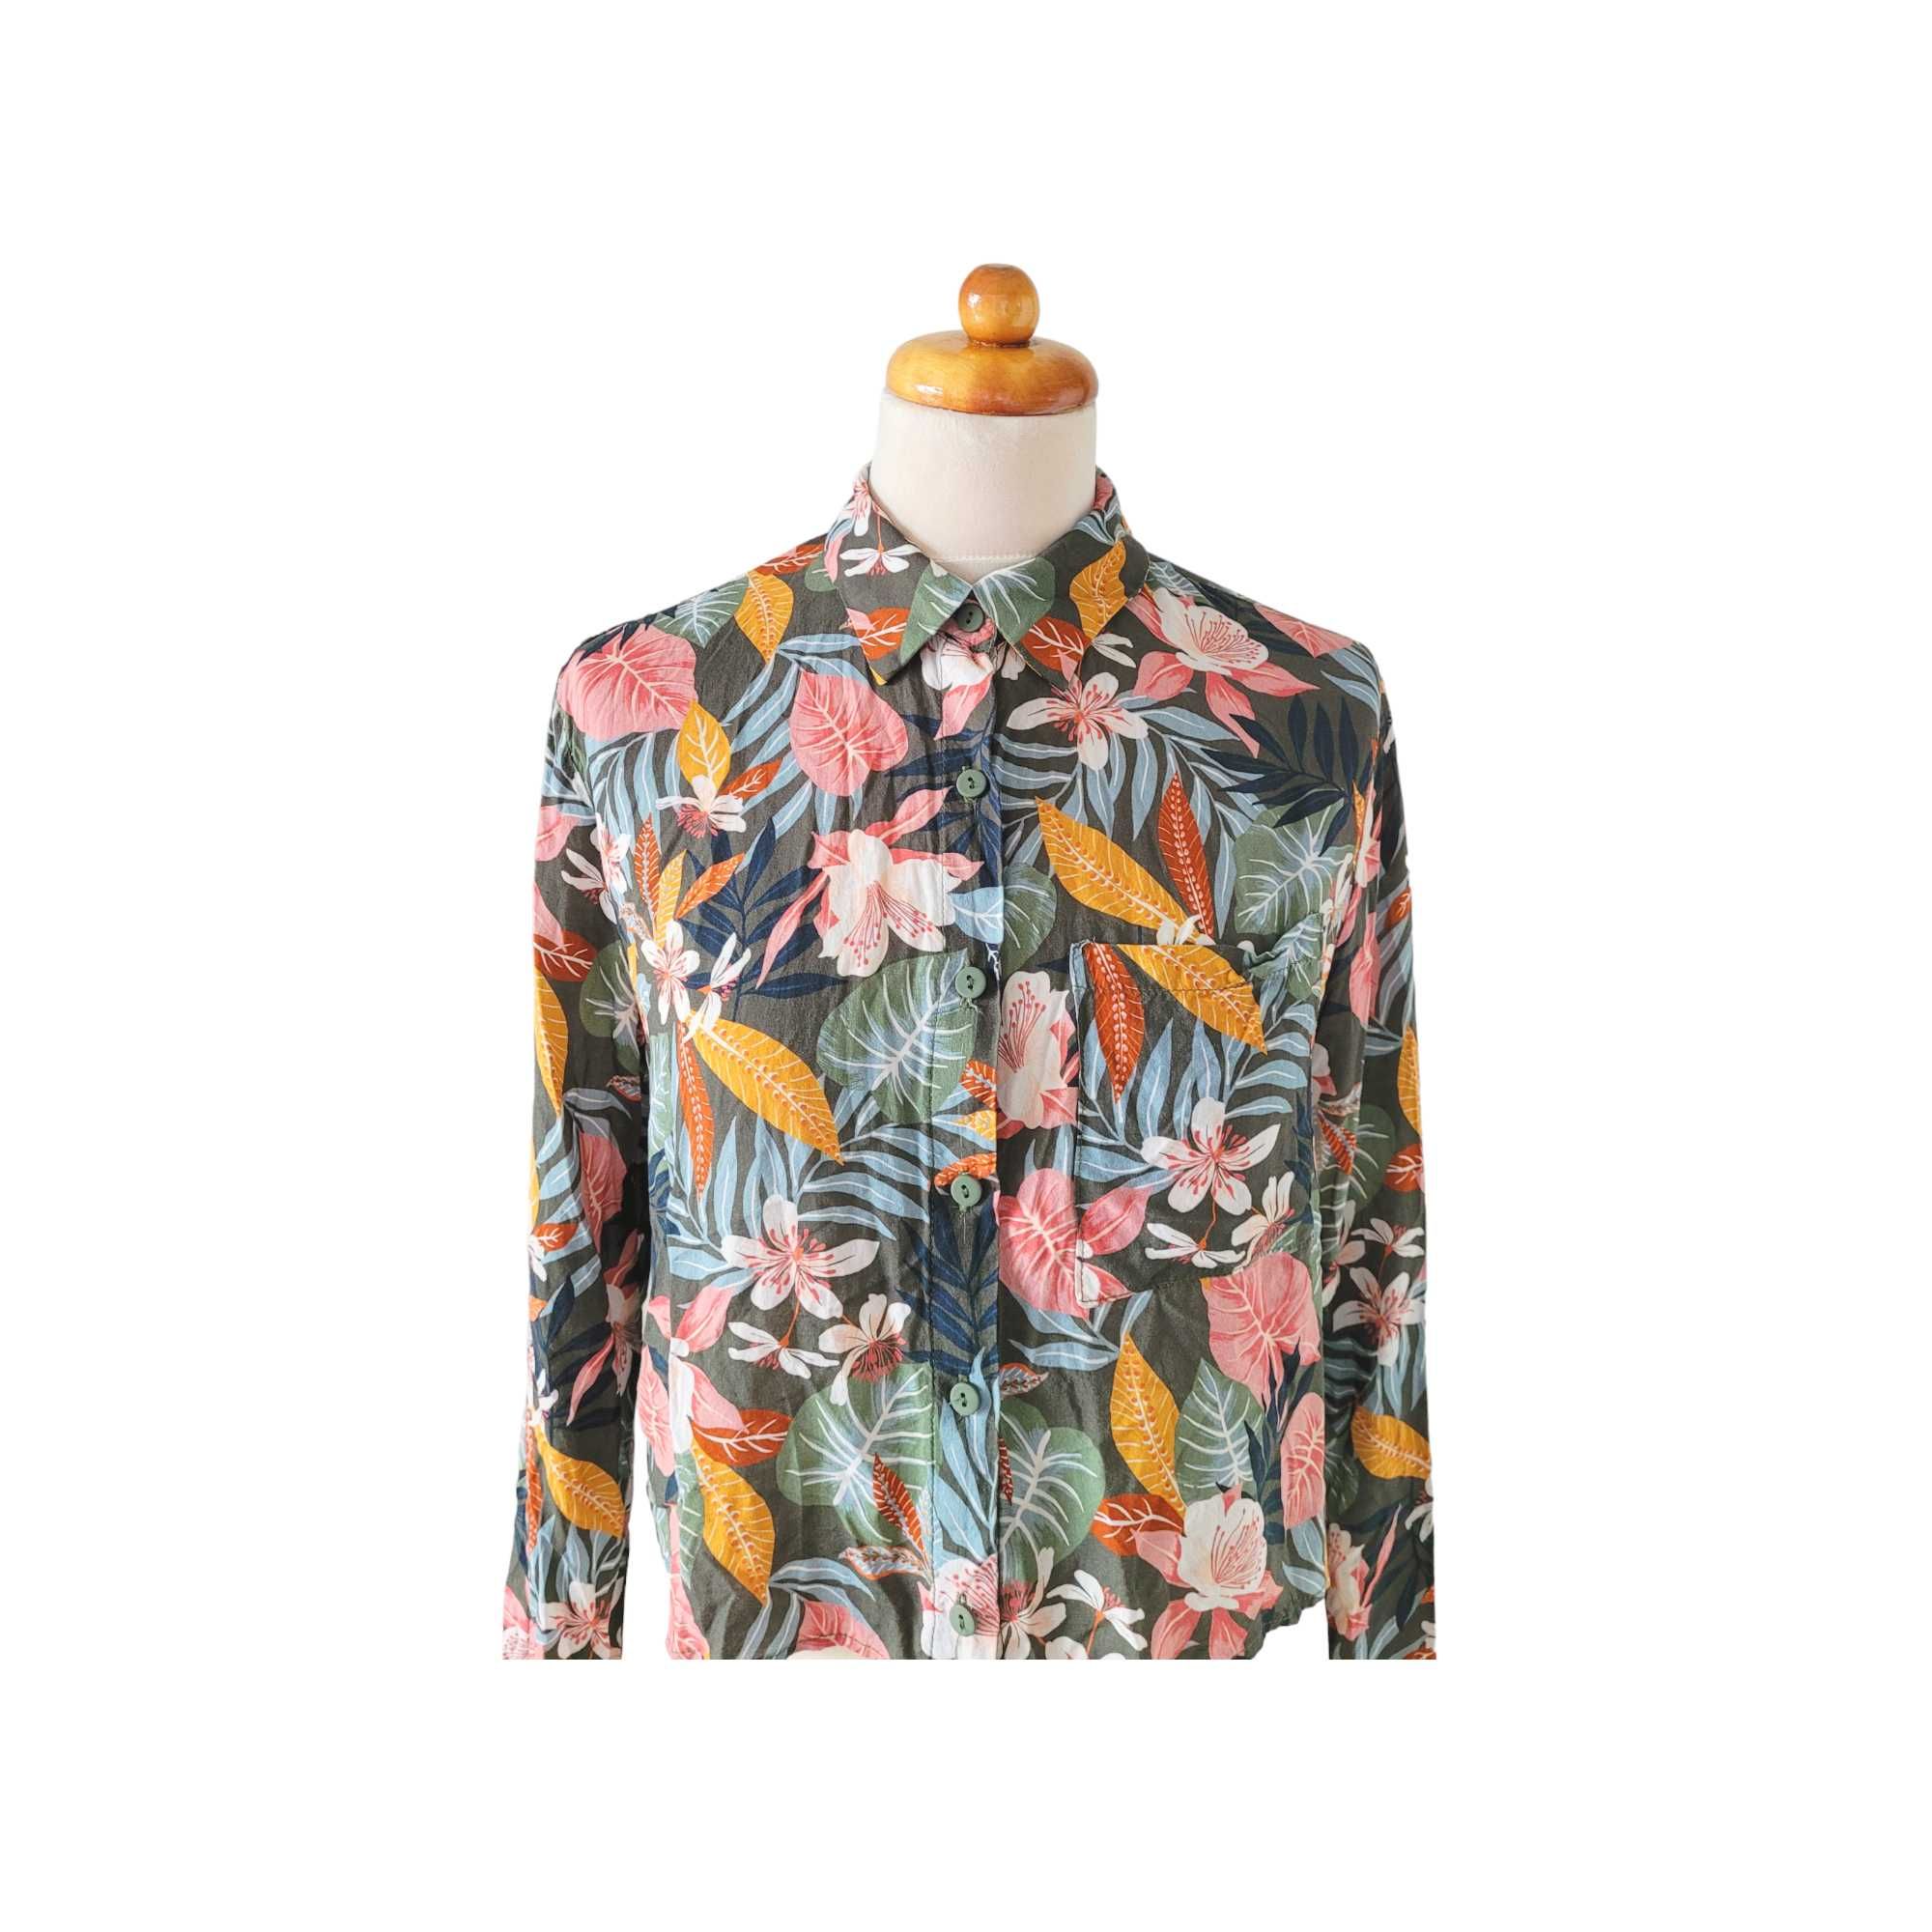 Kolorowa krótka koszula bluzka damska S Bershka w kwiaty liście boho